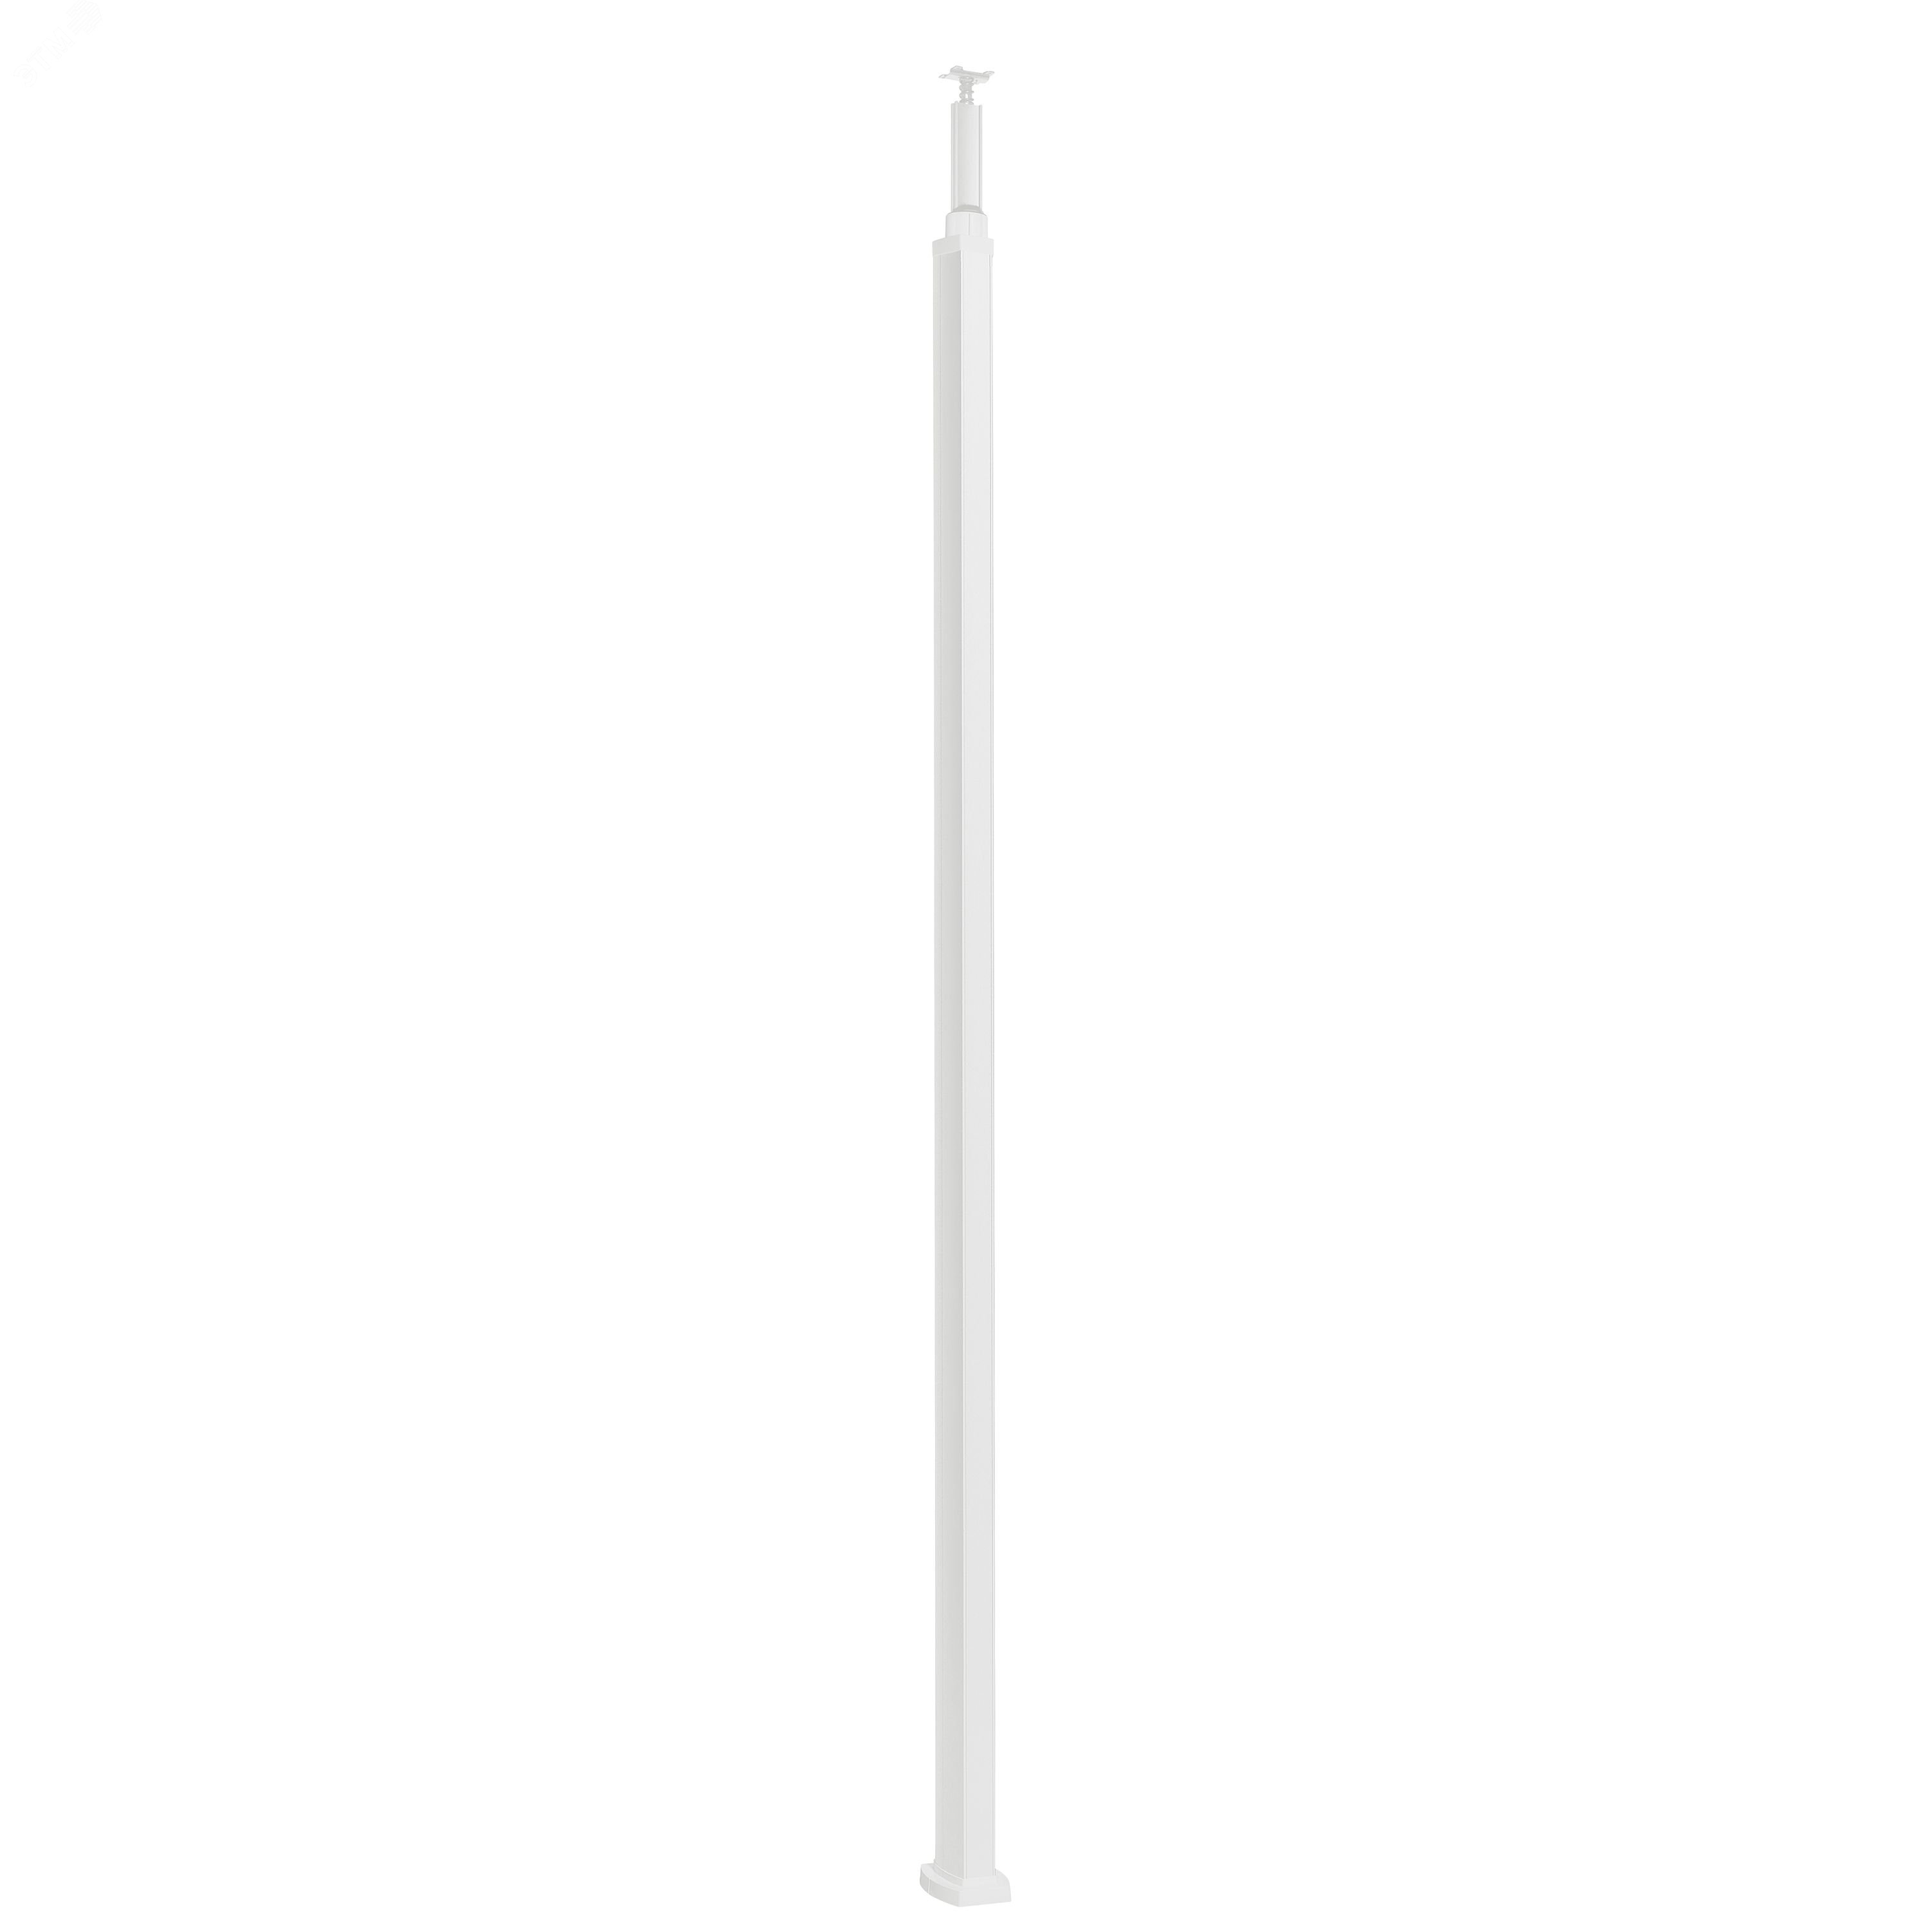 Snap-On колонна пластиковая с крышкой из пластика 2 секции 2,77 метра, с возможностью увеличения высоты колонны до 4,05 метра,  цвет белый 653030 Legrand - превью 2